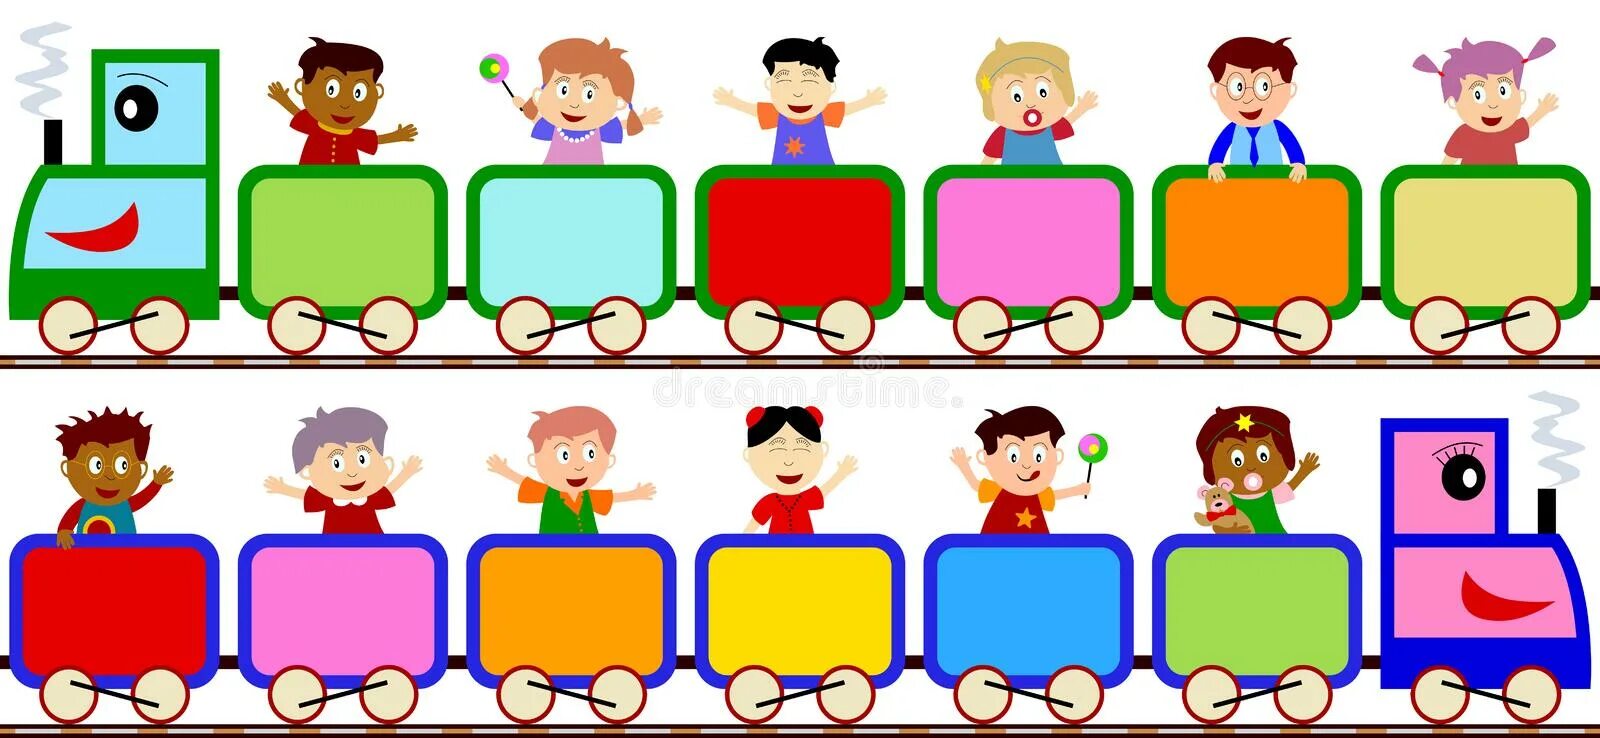 Три математика ехали в разных вагонах. Поезд с вагонами для детей. Паровоз с вагонами для детей. Паровозик с вагонами. Паровозик с вагончиками для детей.